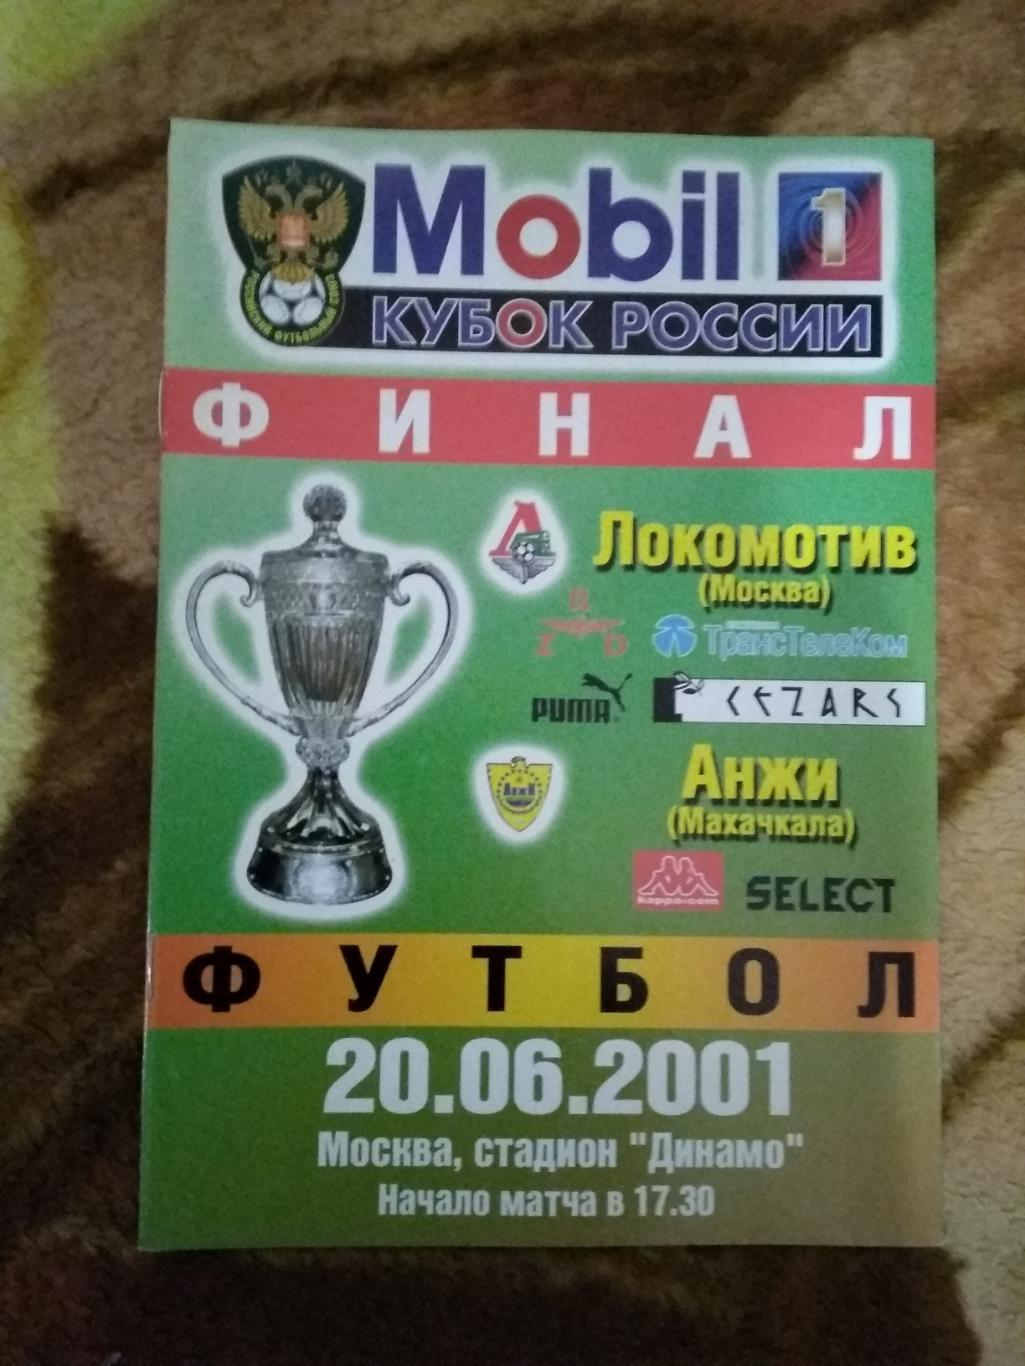 Локомотив (Москва) - Анжи (Махачкала).Кубок России финал 2001 г. (официальная).